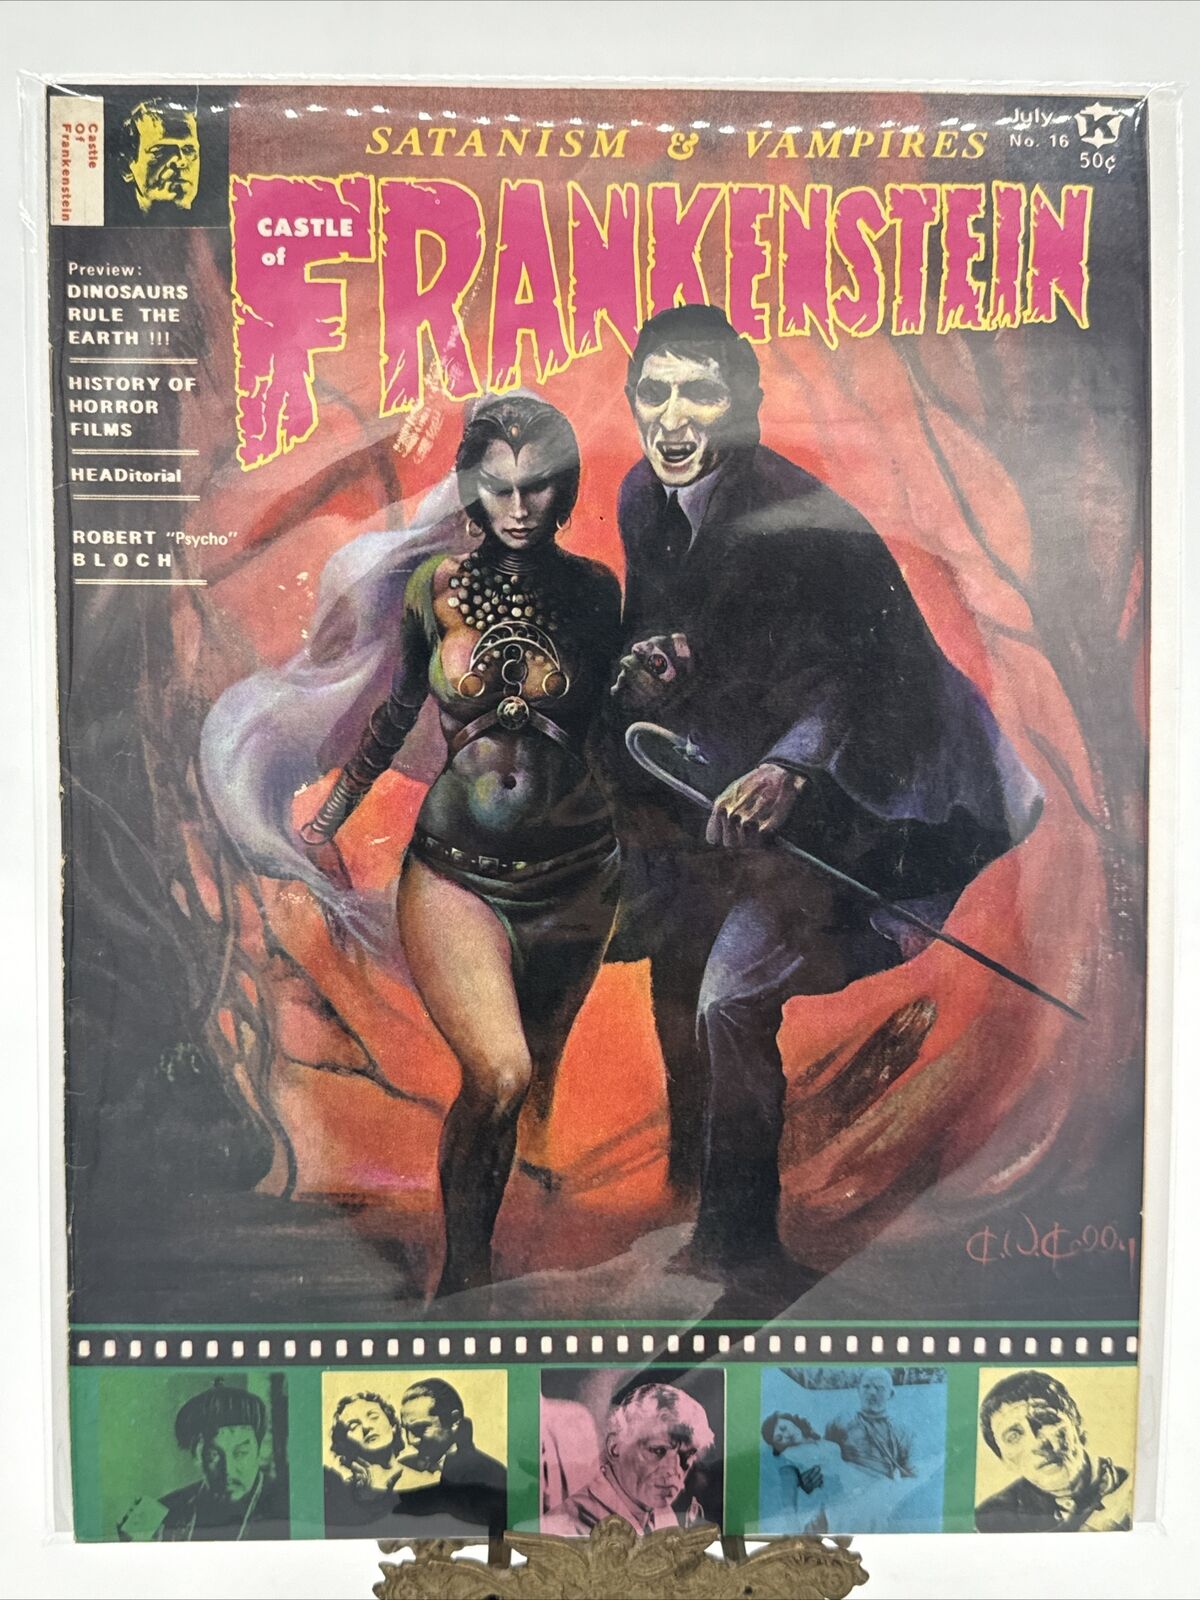 Vintage 1971 CASTLE OF FRANKENSTEIN #16 - Gothic Castle Magazine Monster Horror